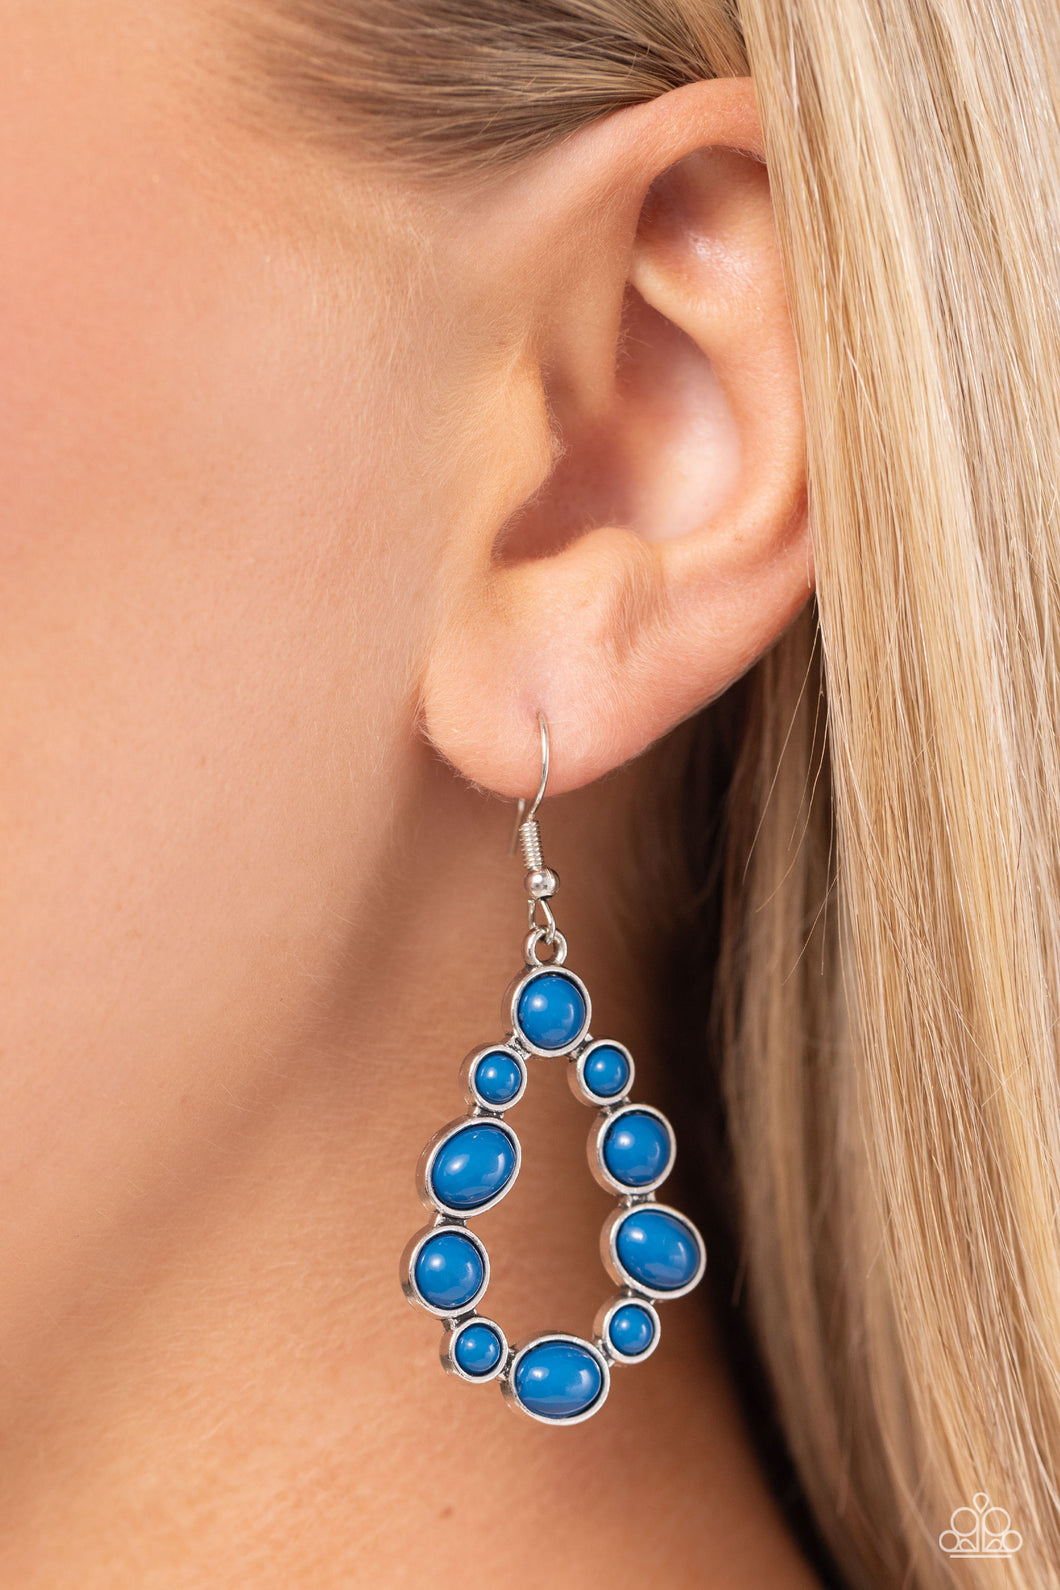 POP-ular Party Blue Earrings - Jewelry by Bretta